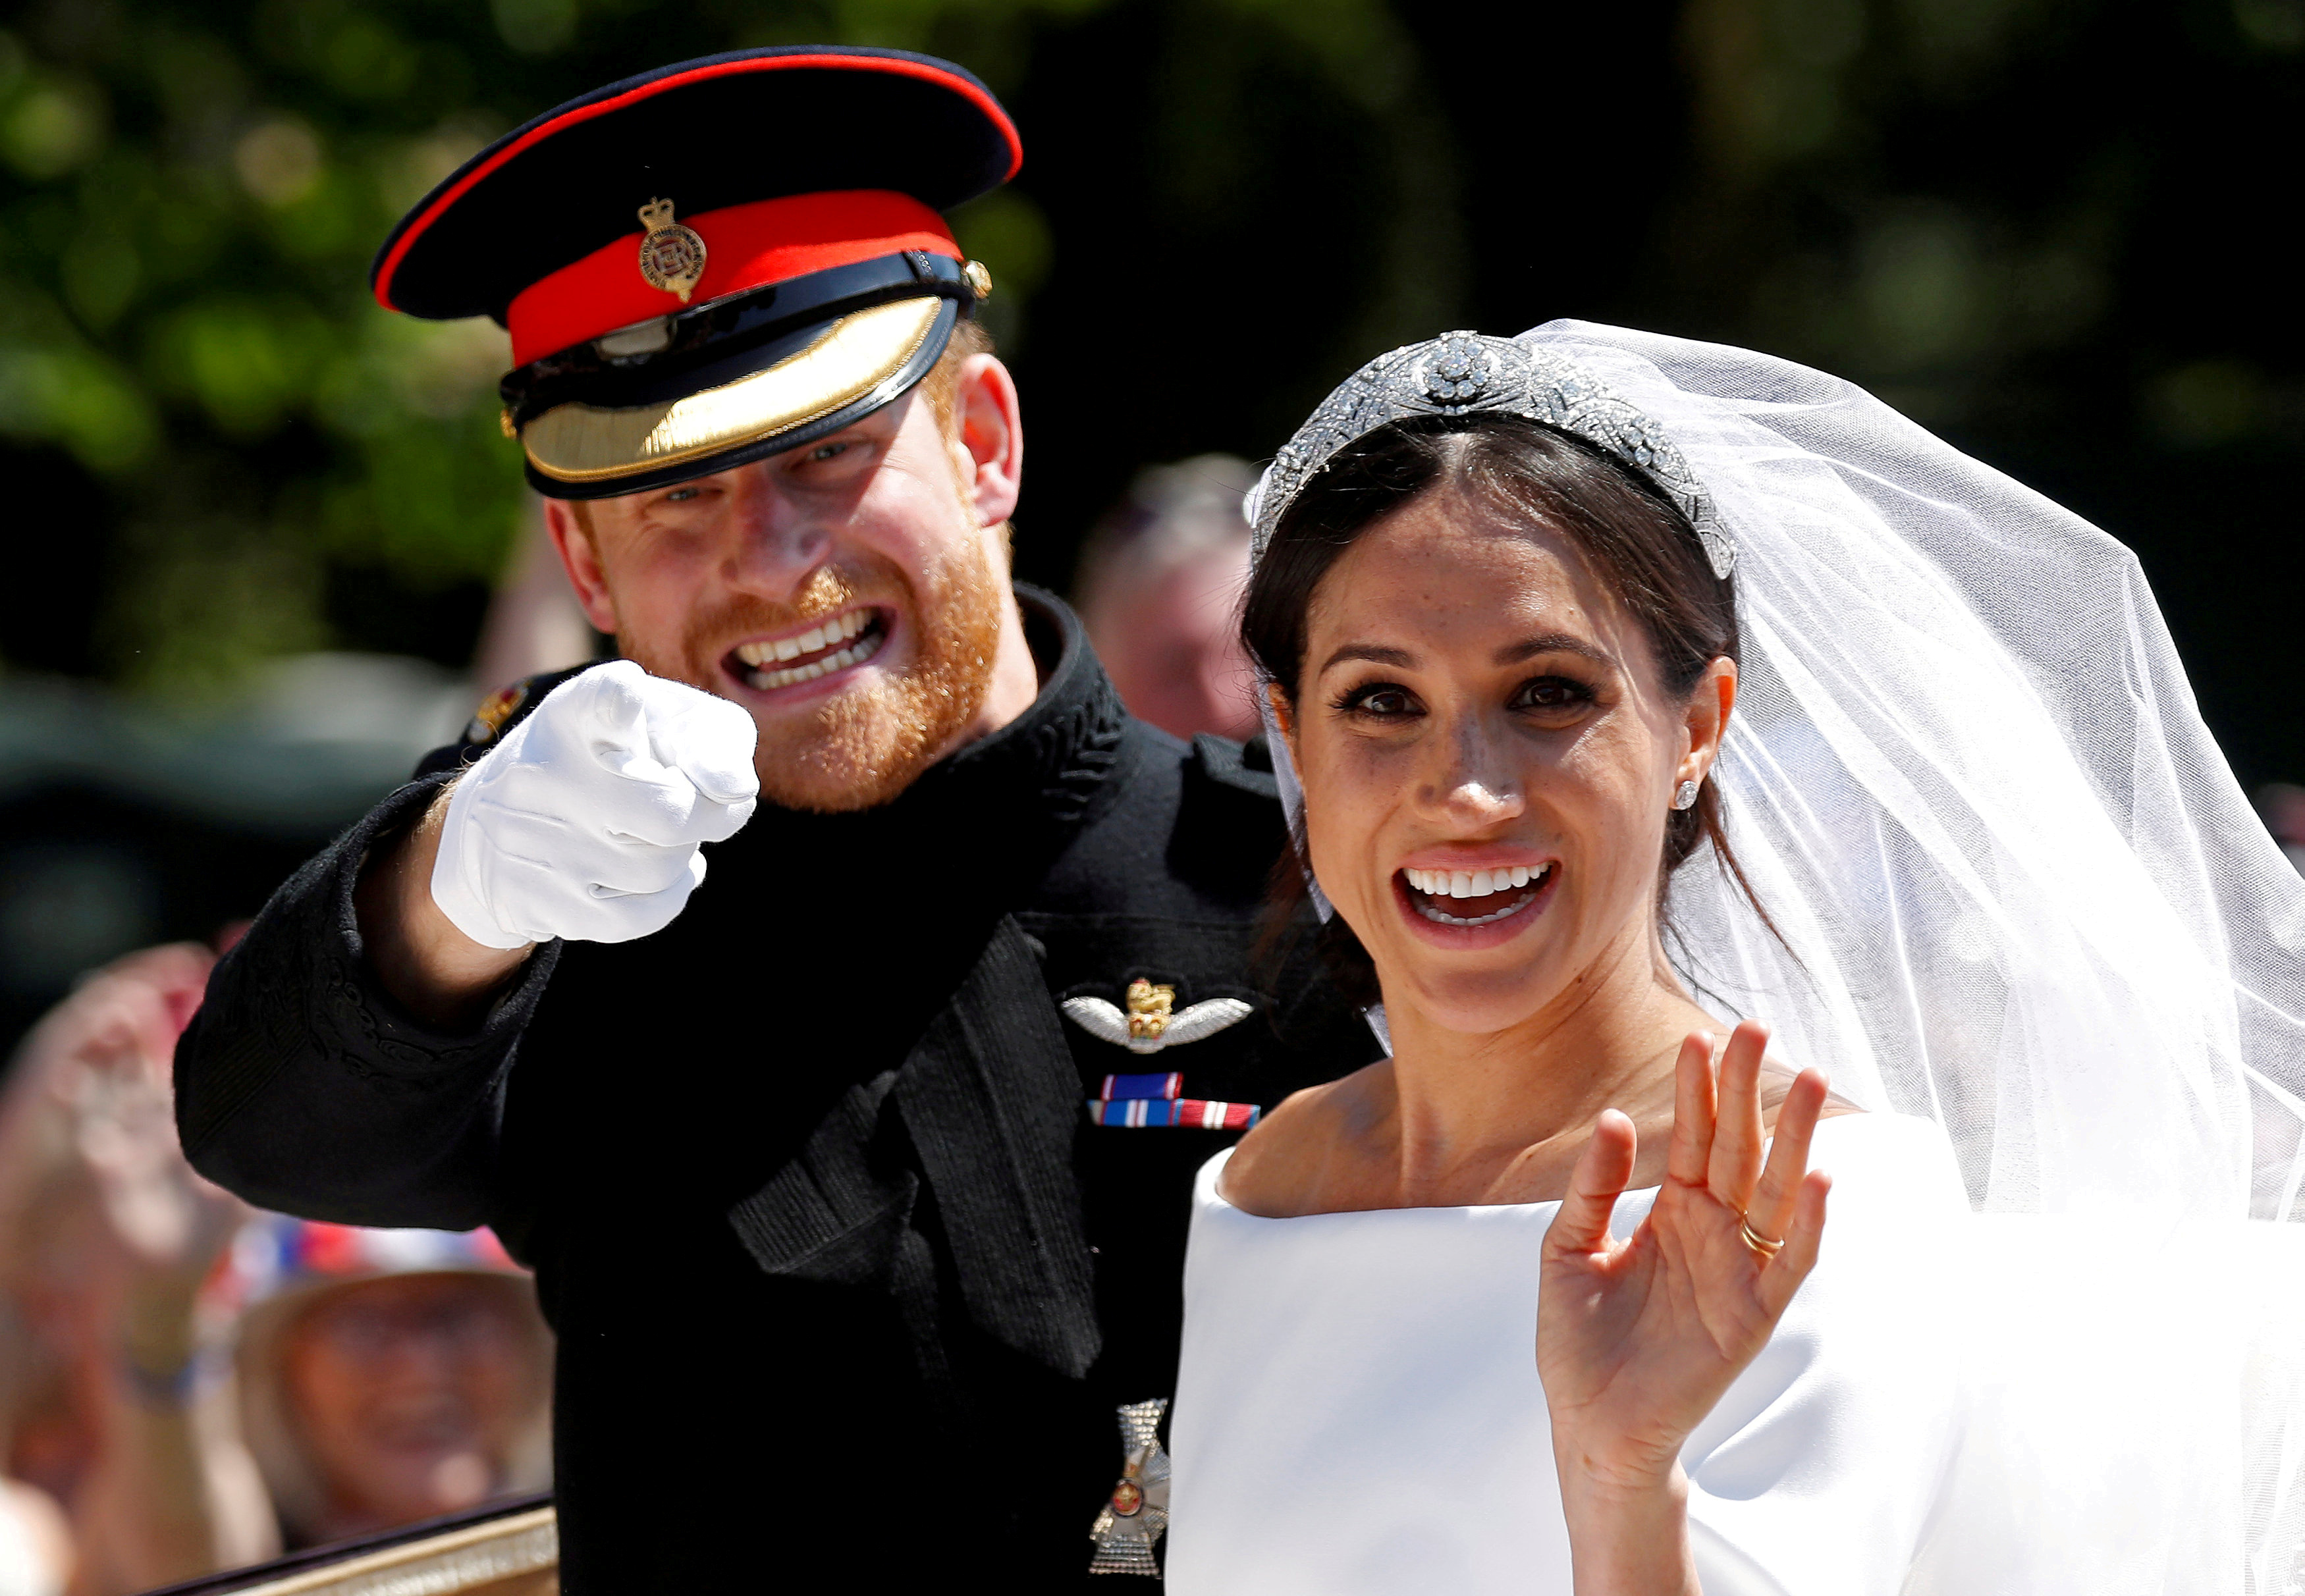 FOTO DE ARCHIVO: El príncipe Harry de Gran Bretaña junto a su esposa Meghan en un carruaje tirado por caballos después de su ceremonia de boda en la Capilla de San Jorge en el Castillo de Windsor en Windsor, Reino Unido, el 19 de mayo de 2018. REUTERS / Damir Sagolj 